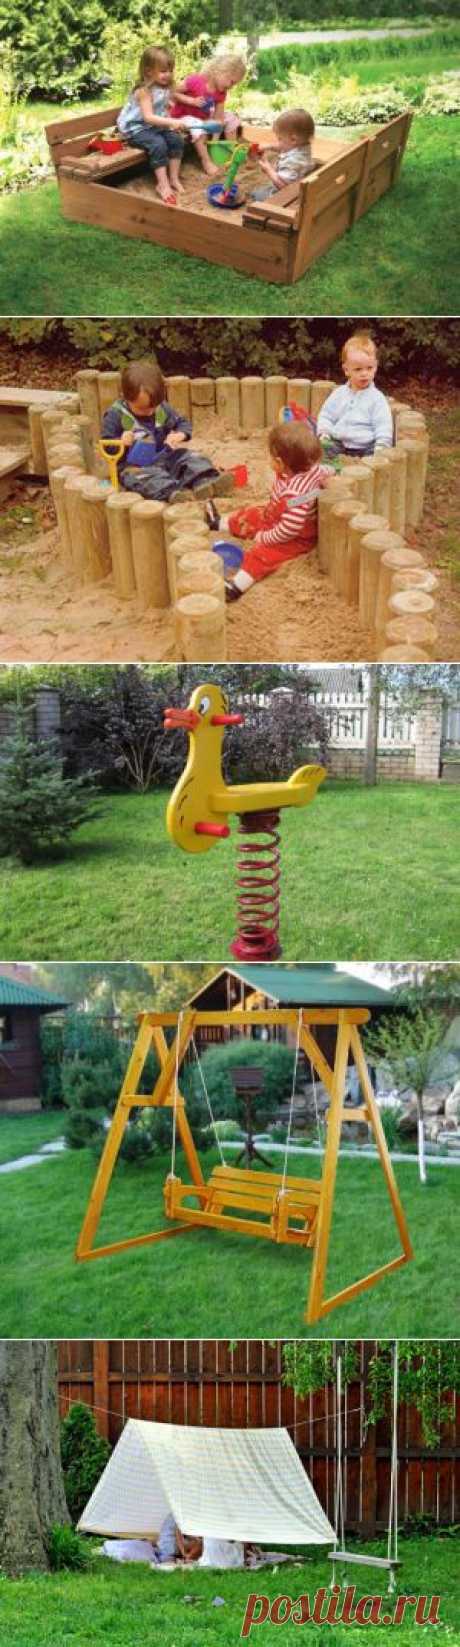 Как сделать детскую площадку своими руками: инструкция по построению песочницы, качелей и домика для детей